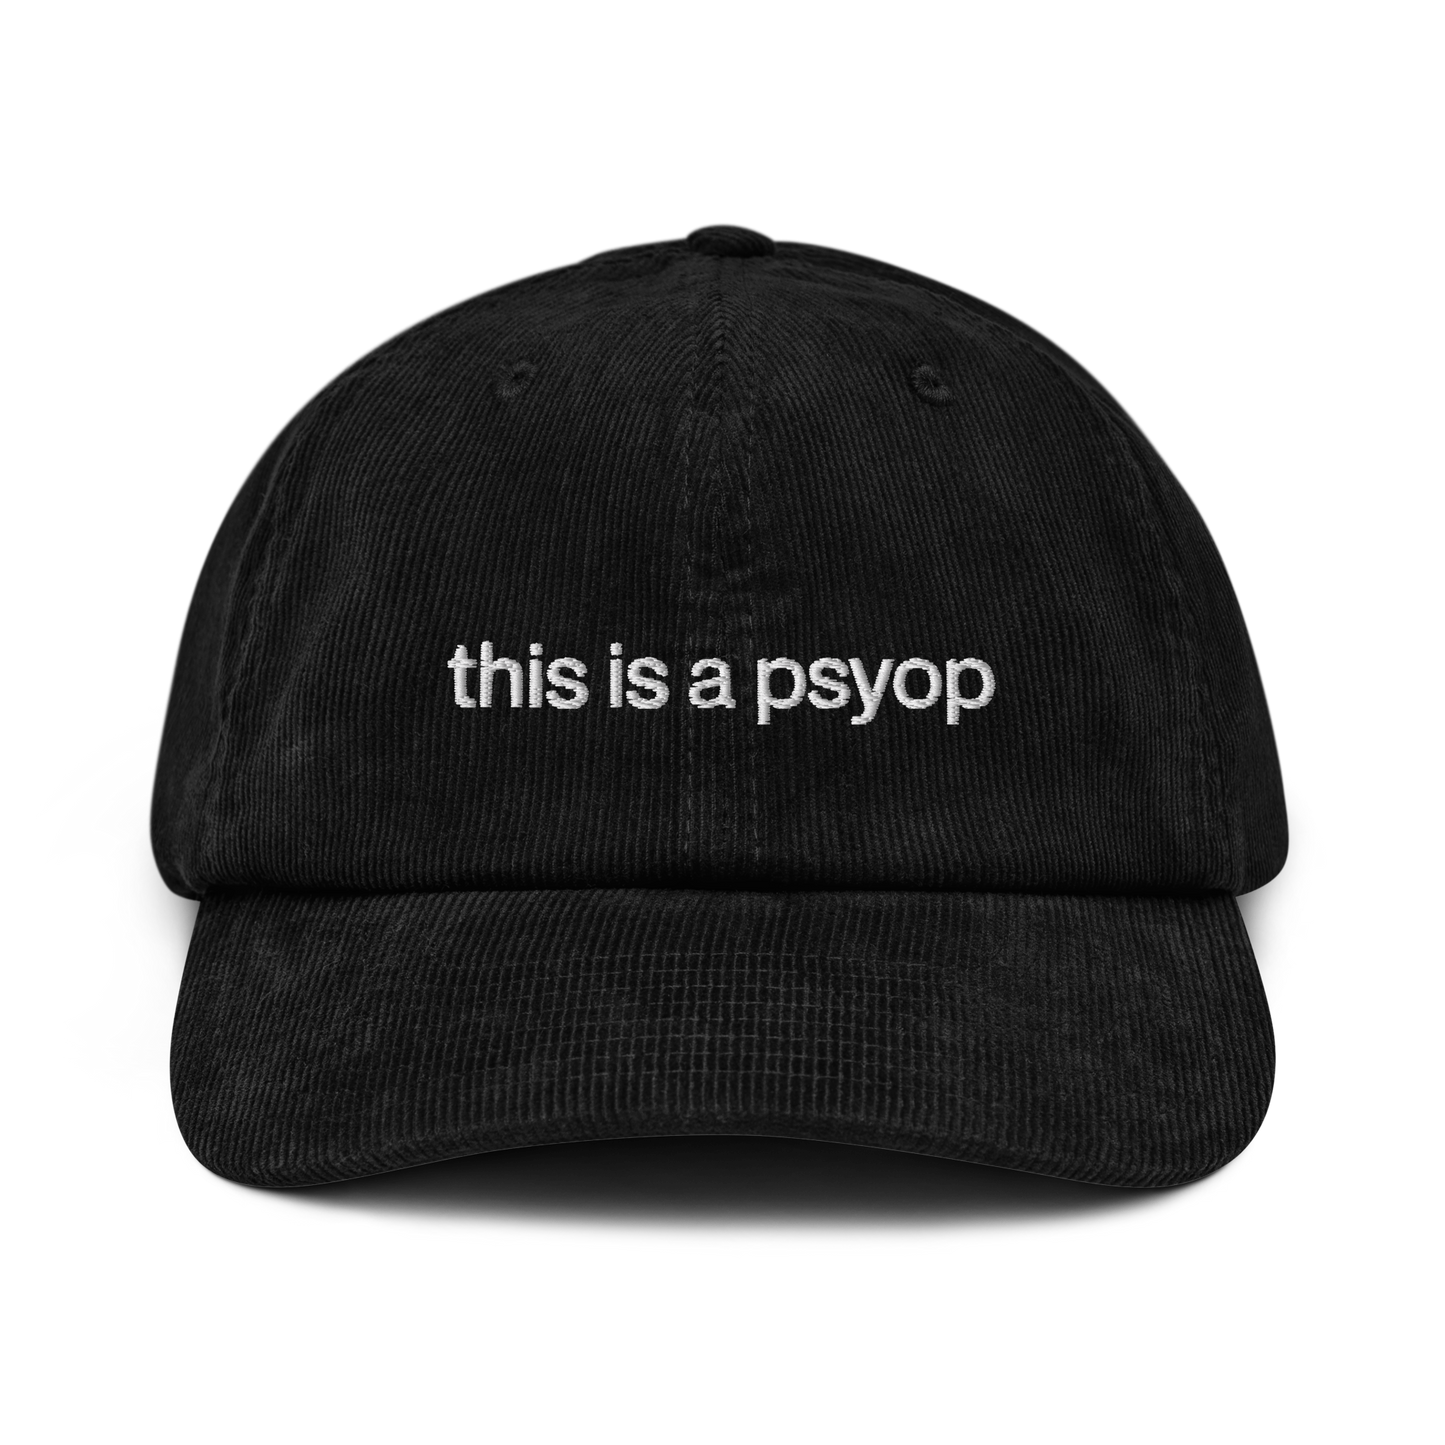 psyop hat